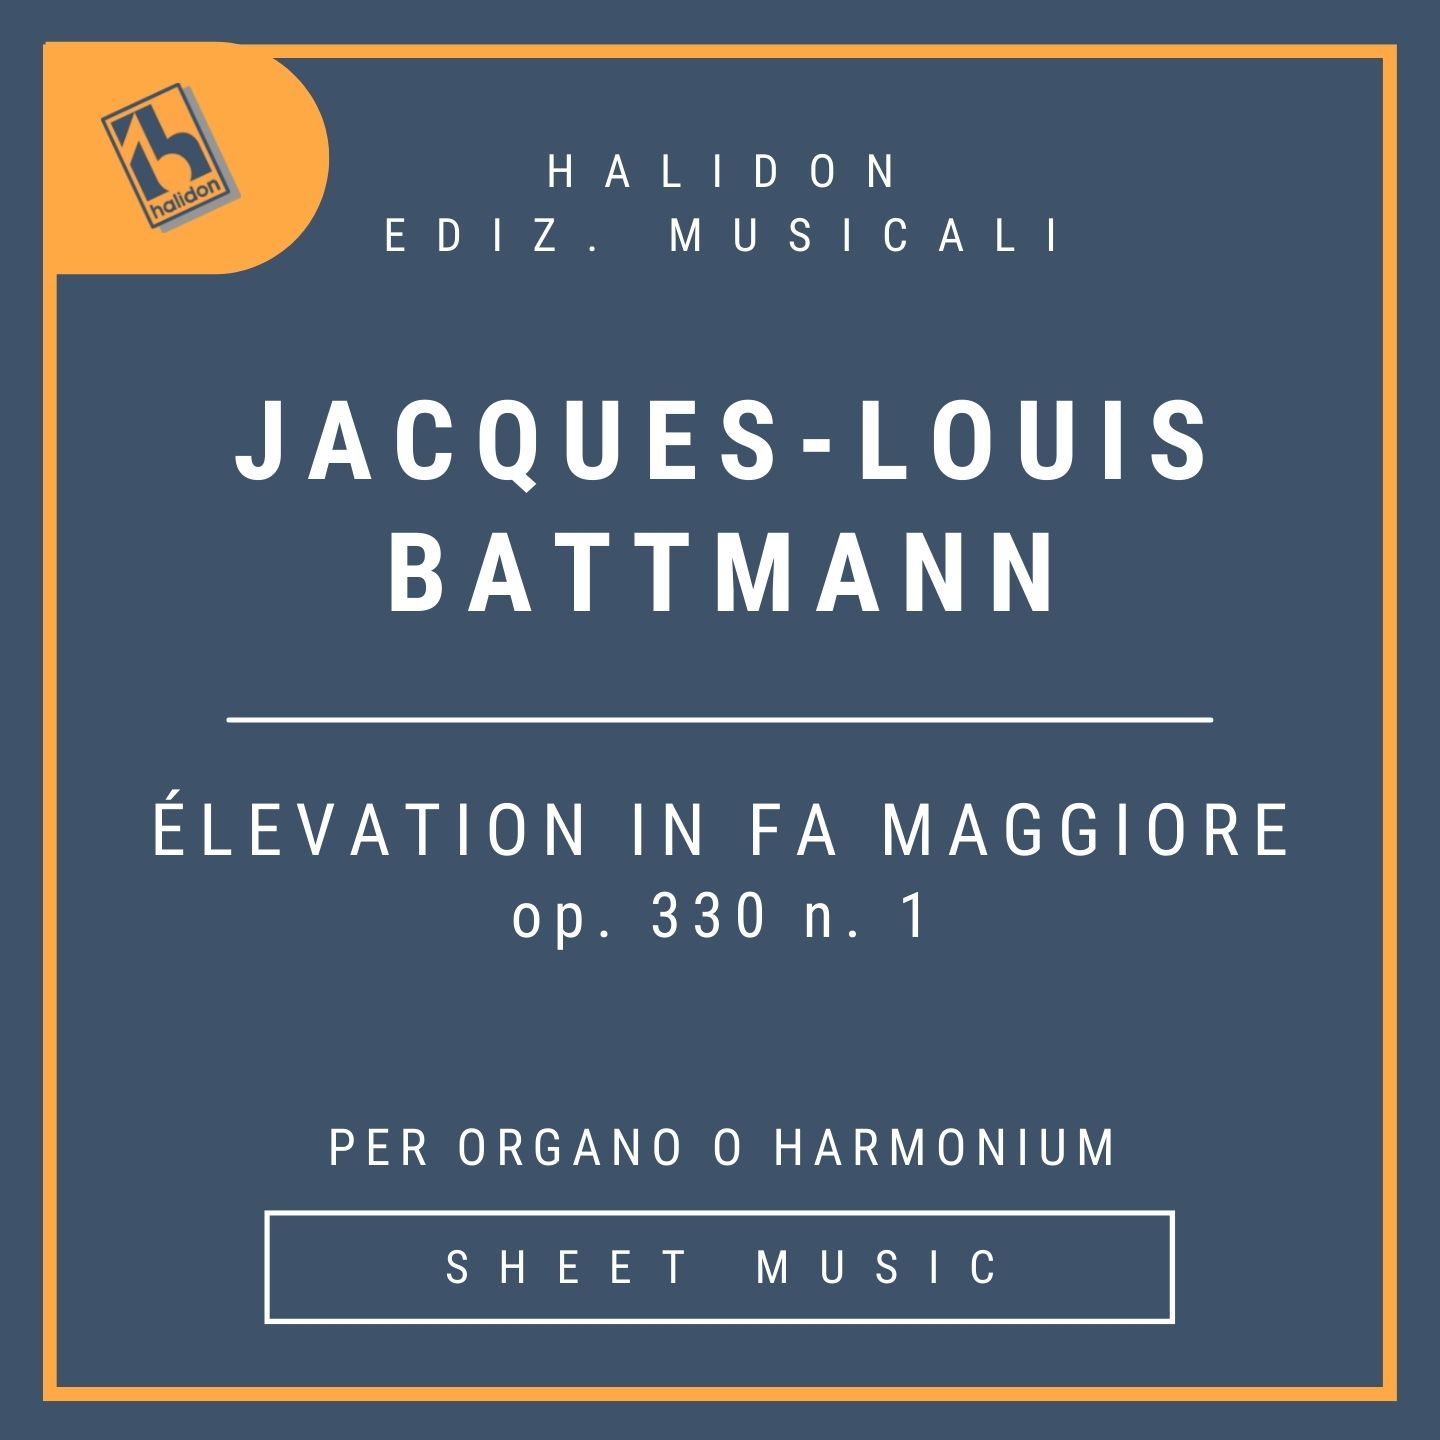 Jacques-Louis Battmann - Élévation op. 330 n. 1 in Fa maggiore per organo